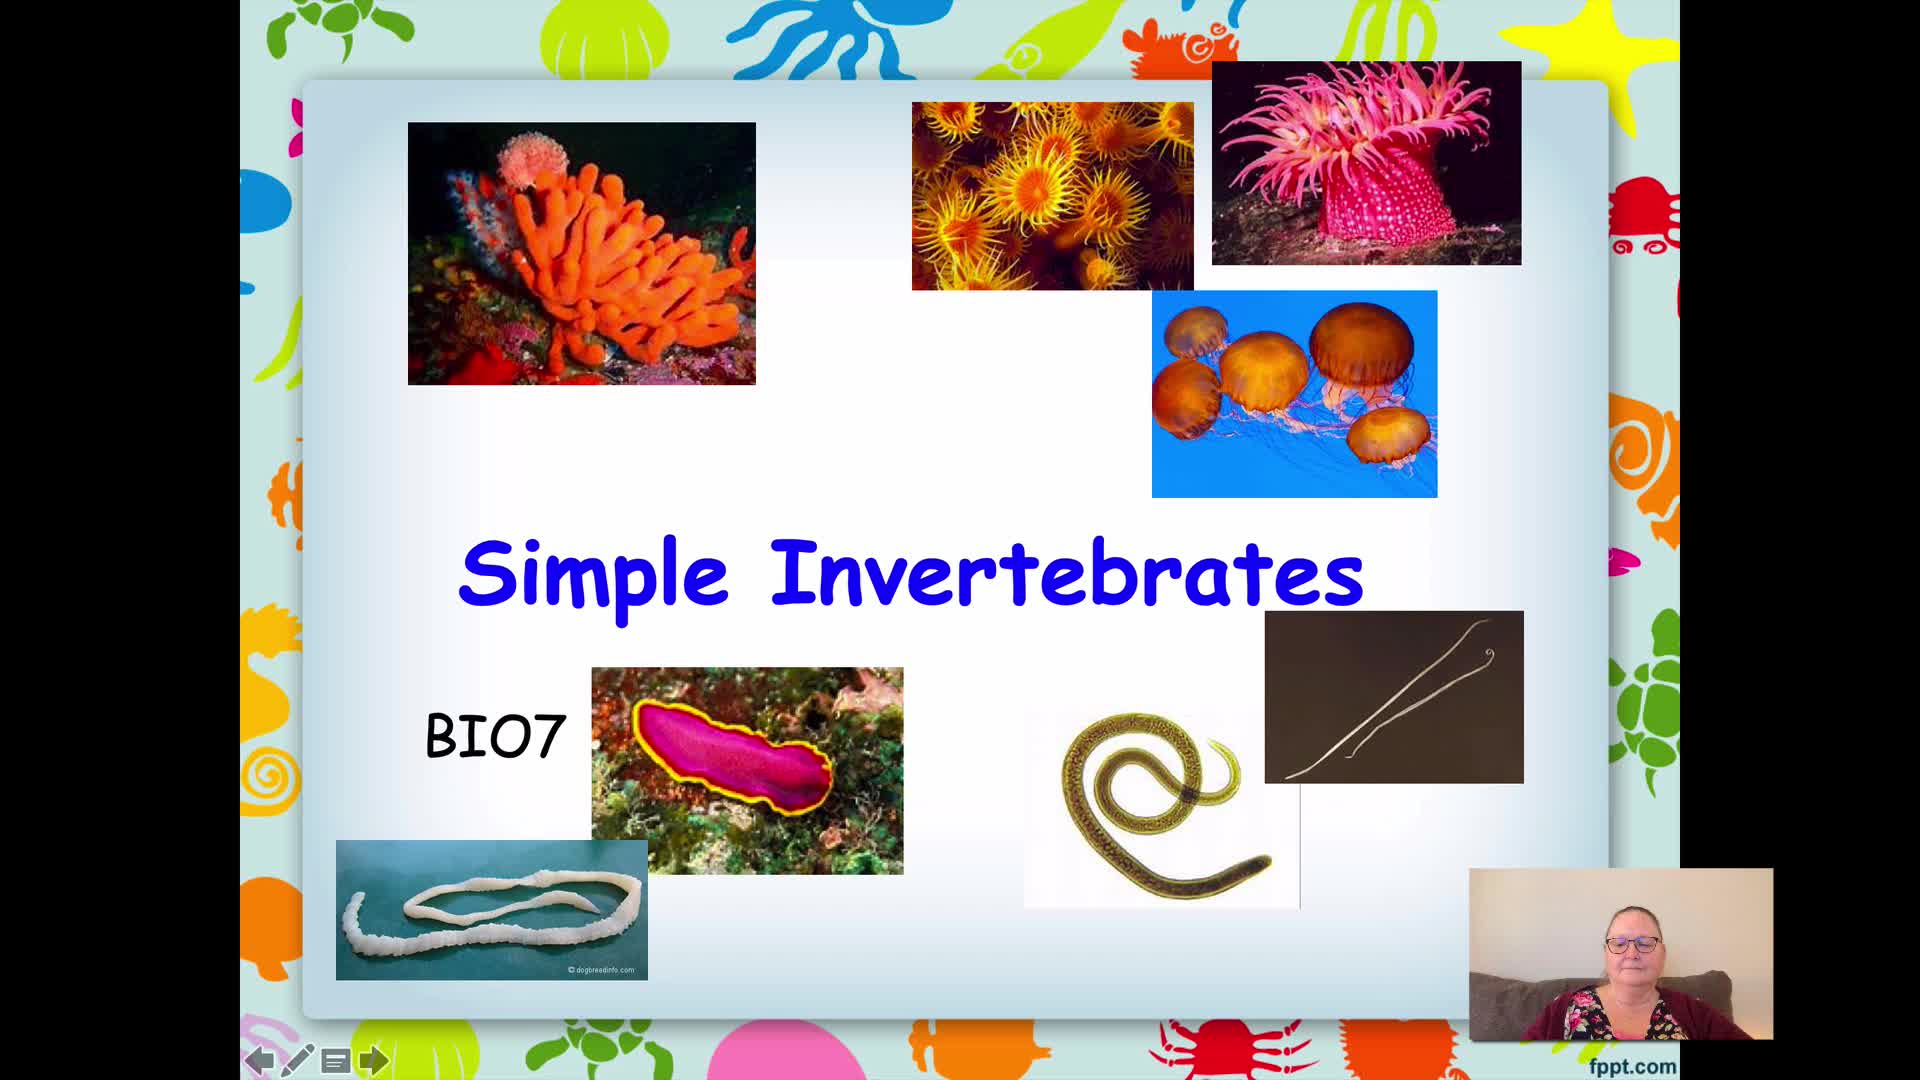 BIO7 - Simple Invertebrates